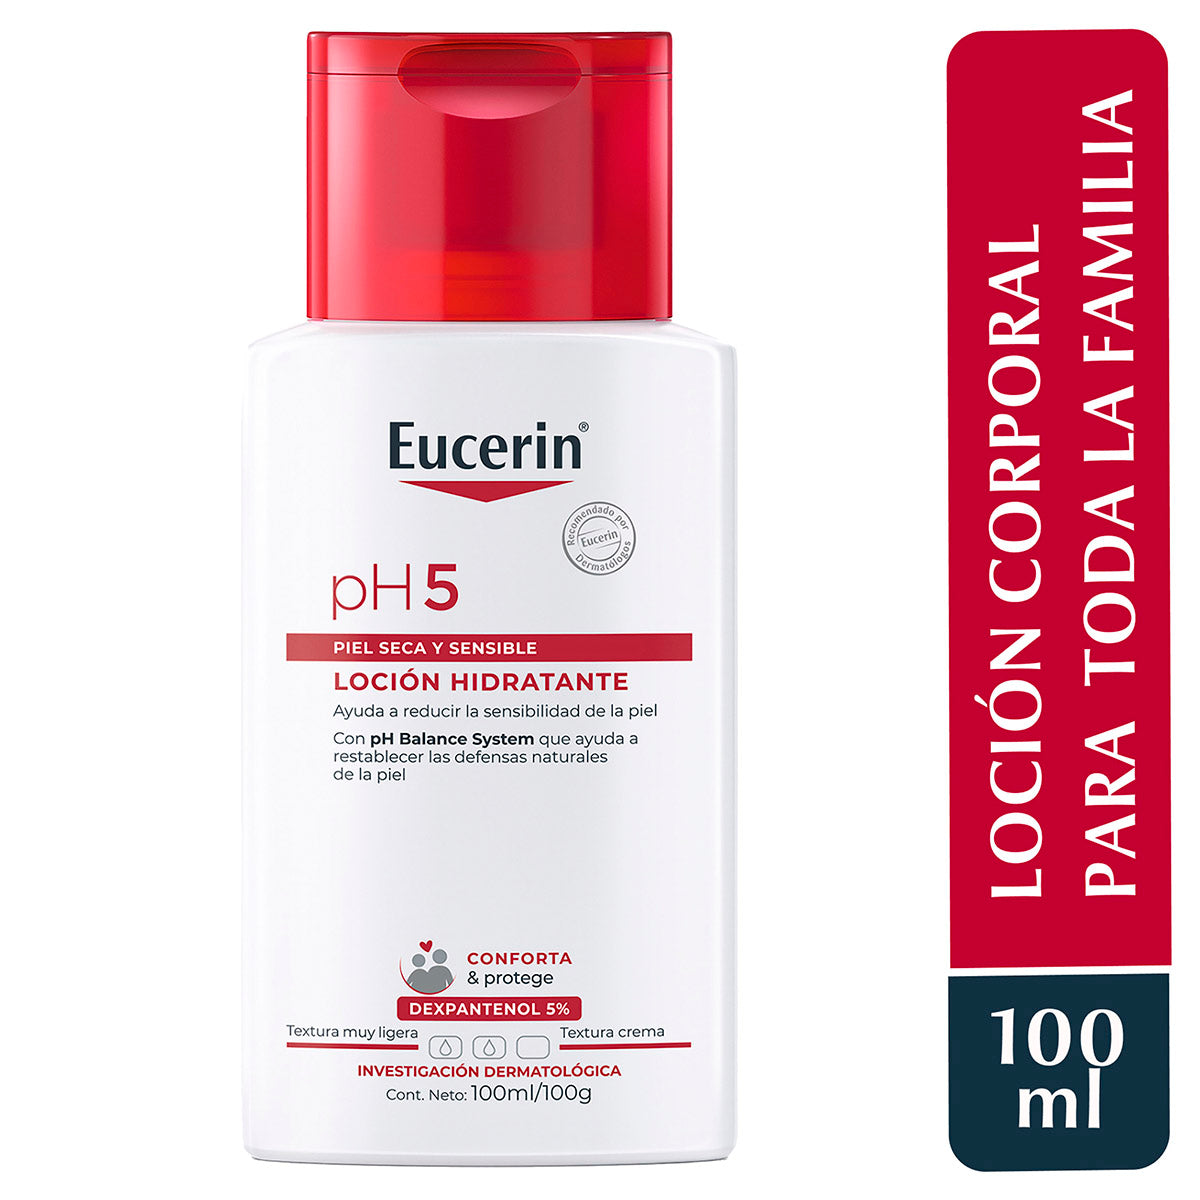 Eucerin pH5 loción corporal hidratante piel seca y sensible 100ml.